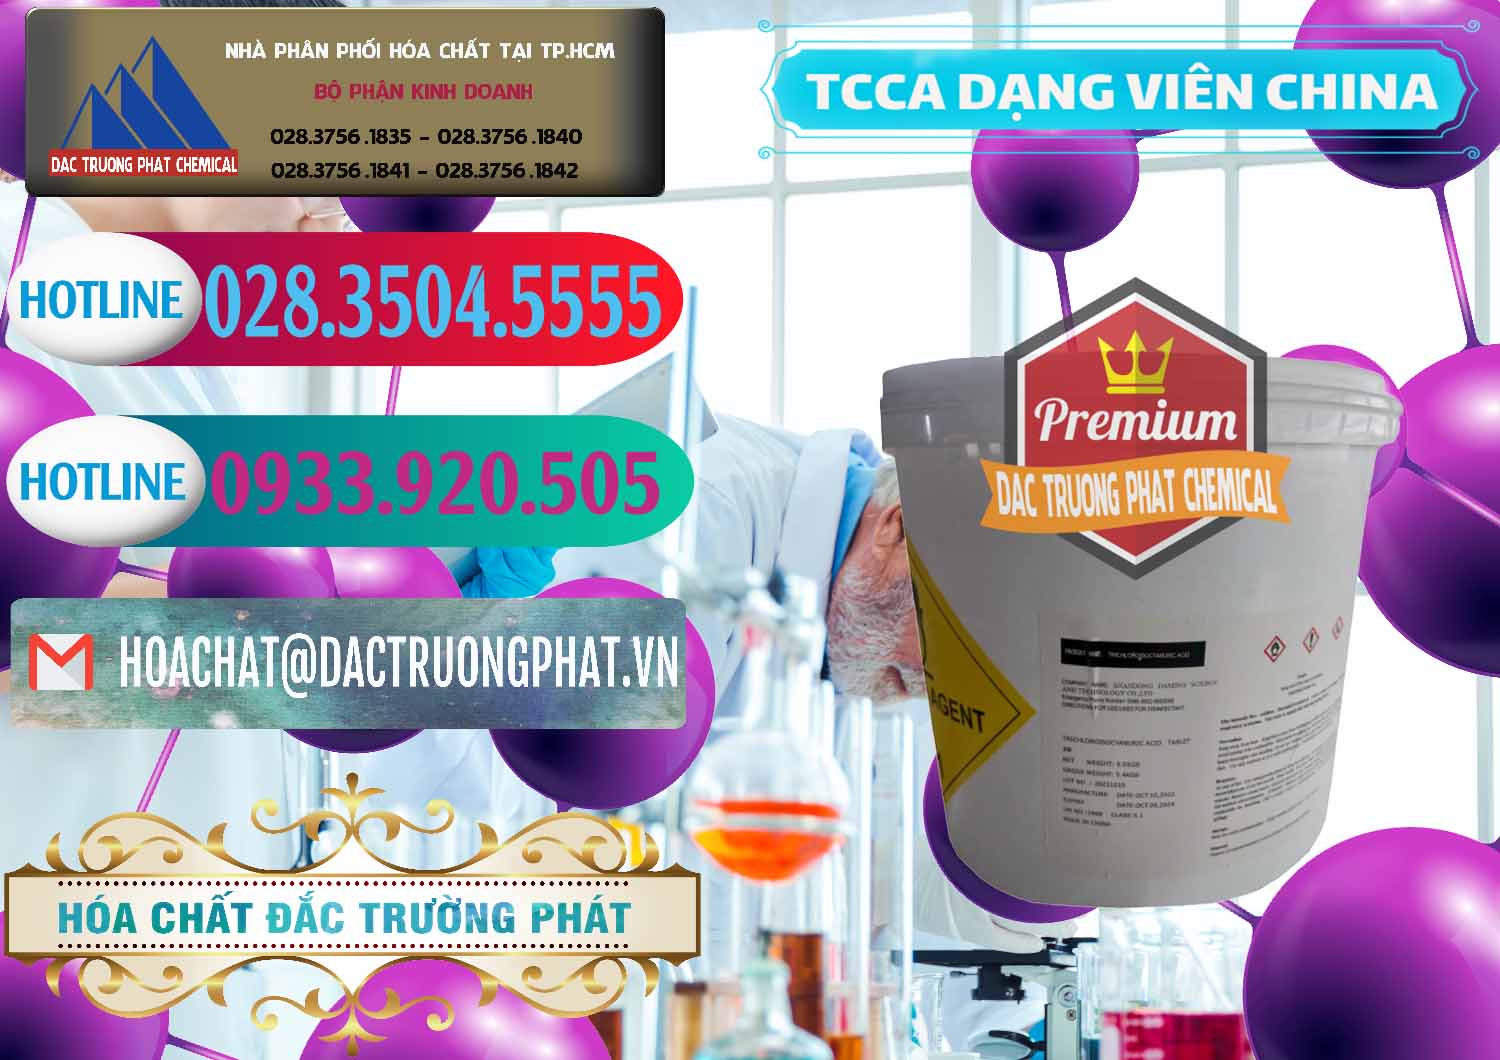 Chuyên cung cấp _ bán TCCA - Acid Trichloroisocyanuric Dạng Viên Thùng 5kg Trung Quốc China - 0379 - Đơn vị phân phối và cung cấp hóa chất tại TP.HCM - truongphat.vn